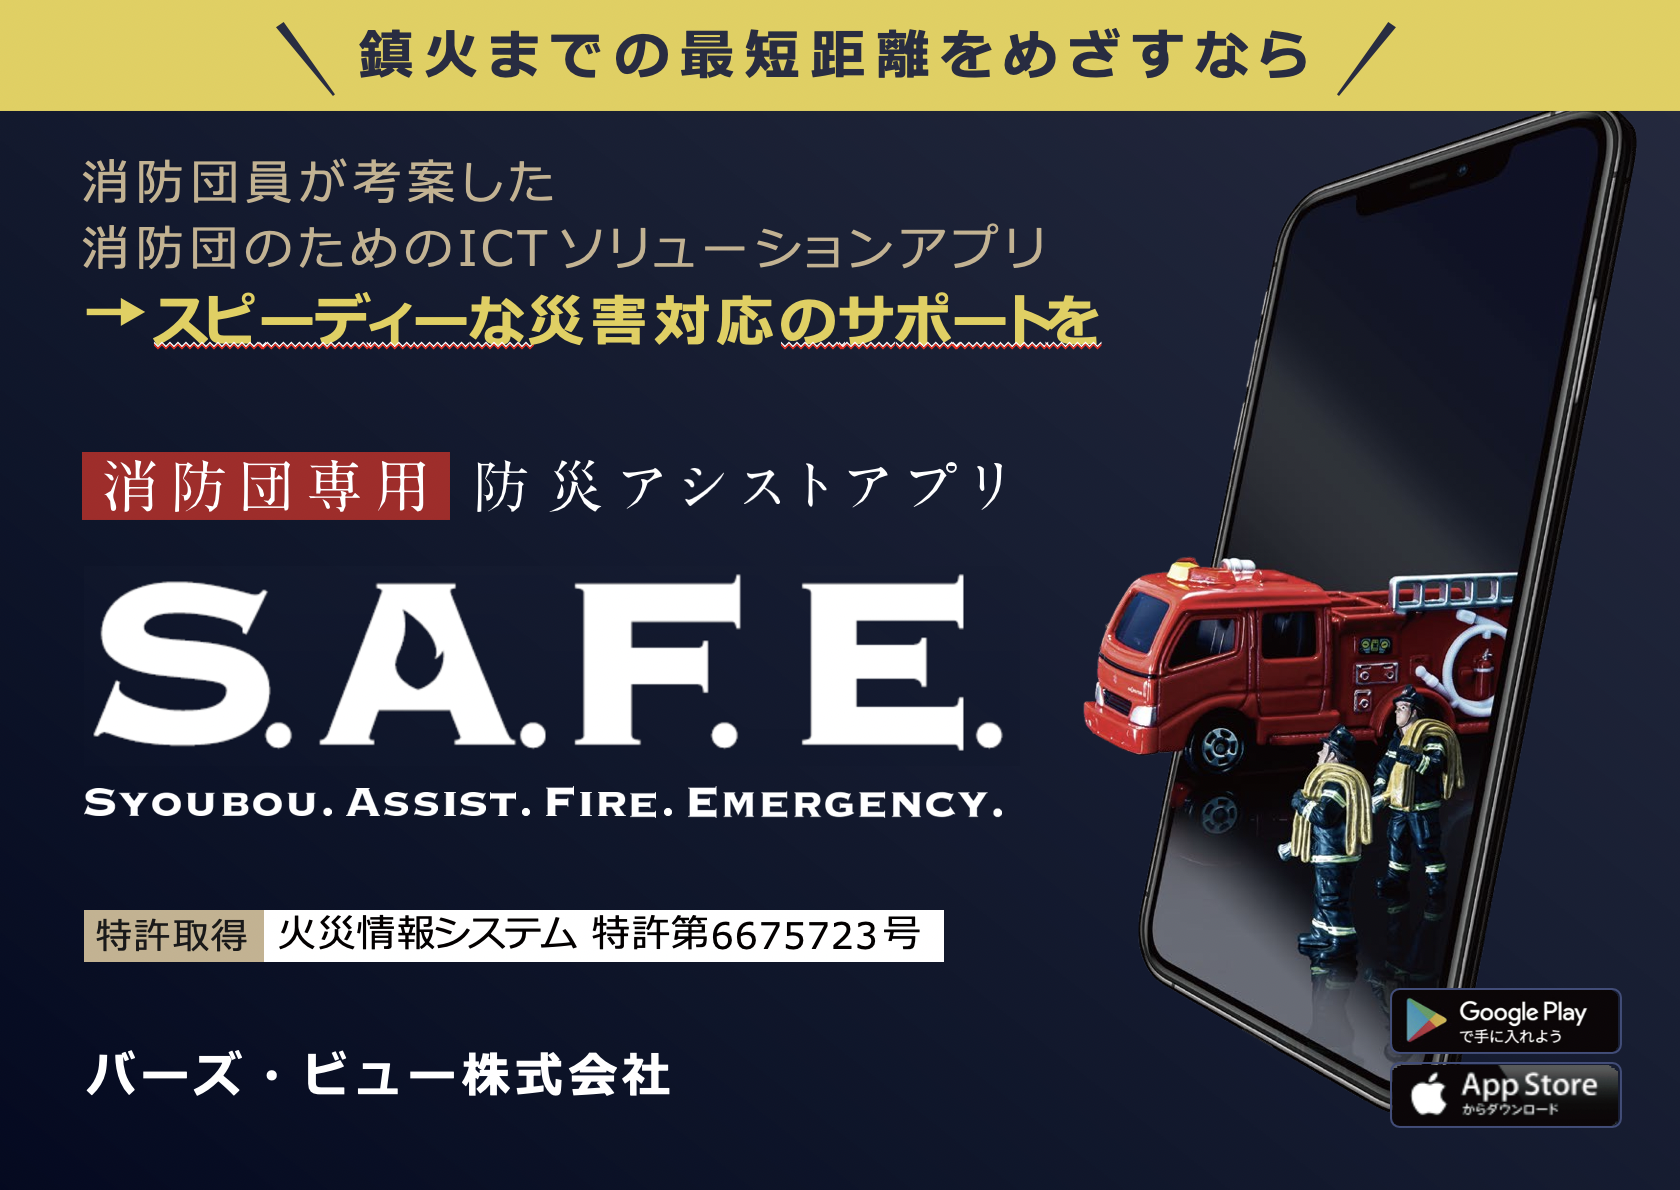 兵庫県明石市、消防団支援アプリを活用した実証実験開始[ニュース]